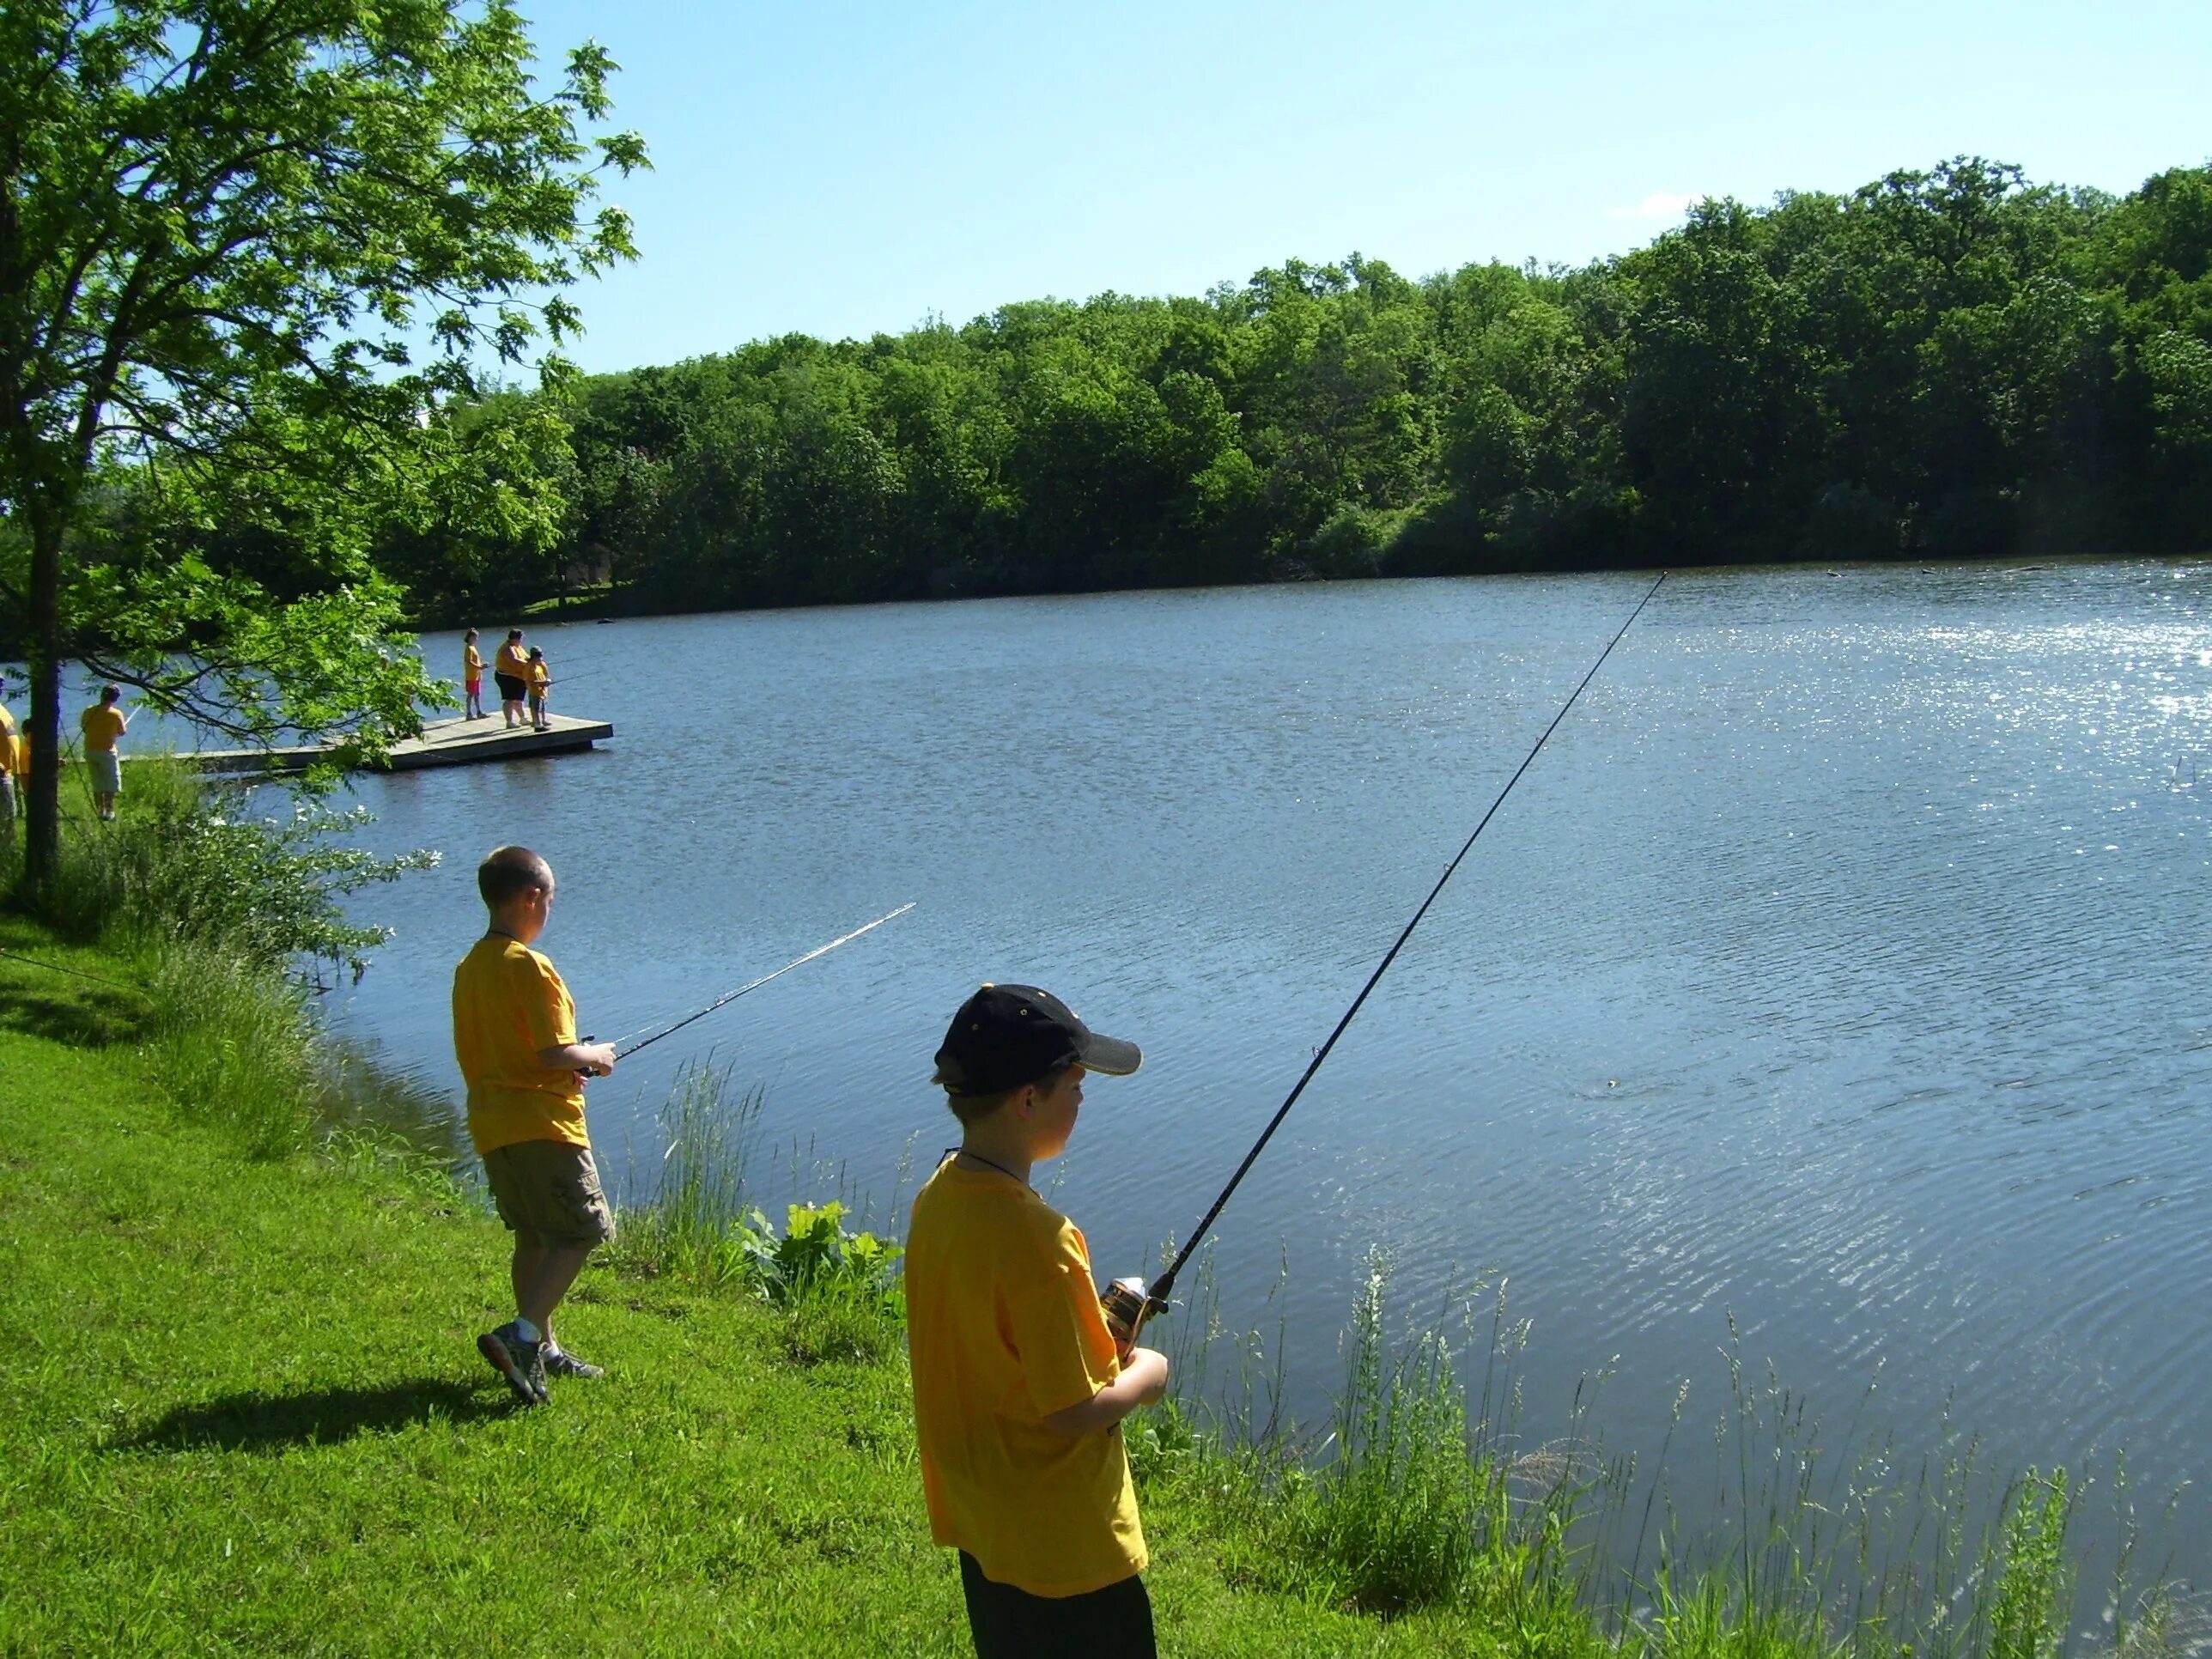 Рыбак на озере. Озеро с удочкой. Рыбалка летом. Рыбалка на реке. На какой реке рыбачил